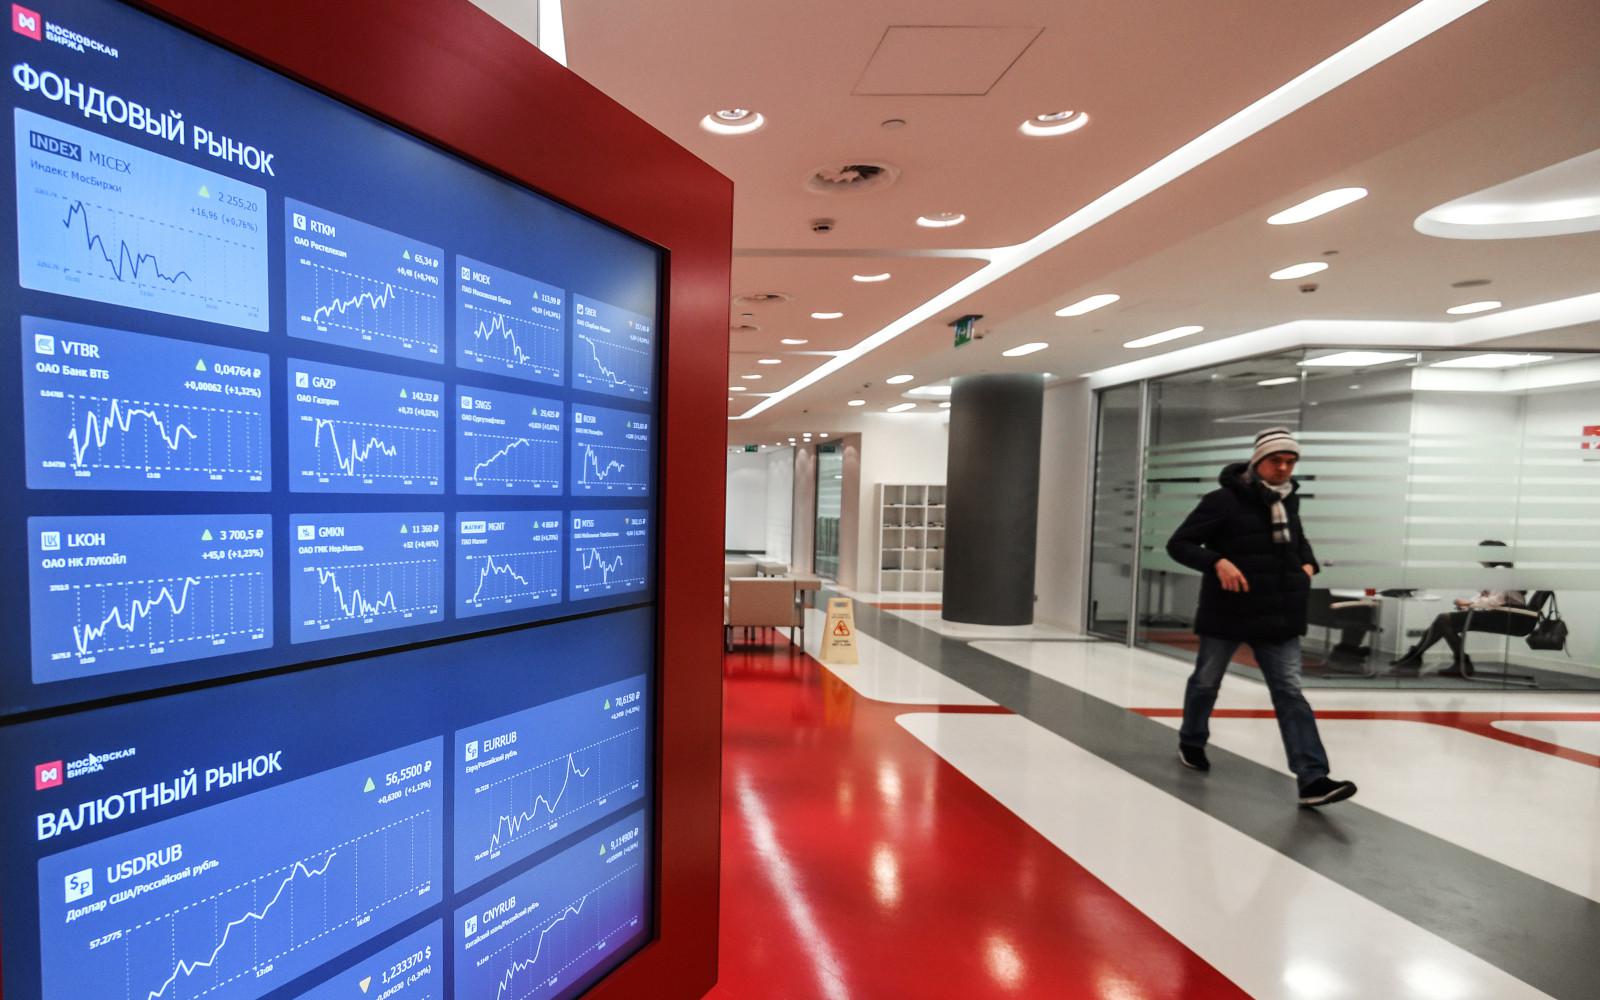 Котировки фондового и валютного рынков на экране в здании Московской биржи